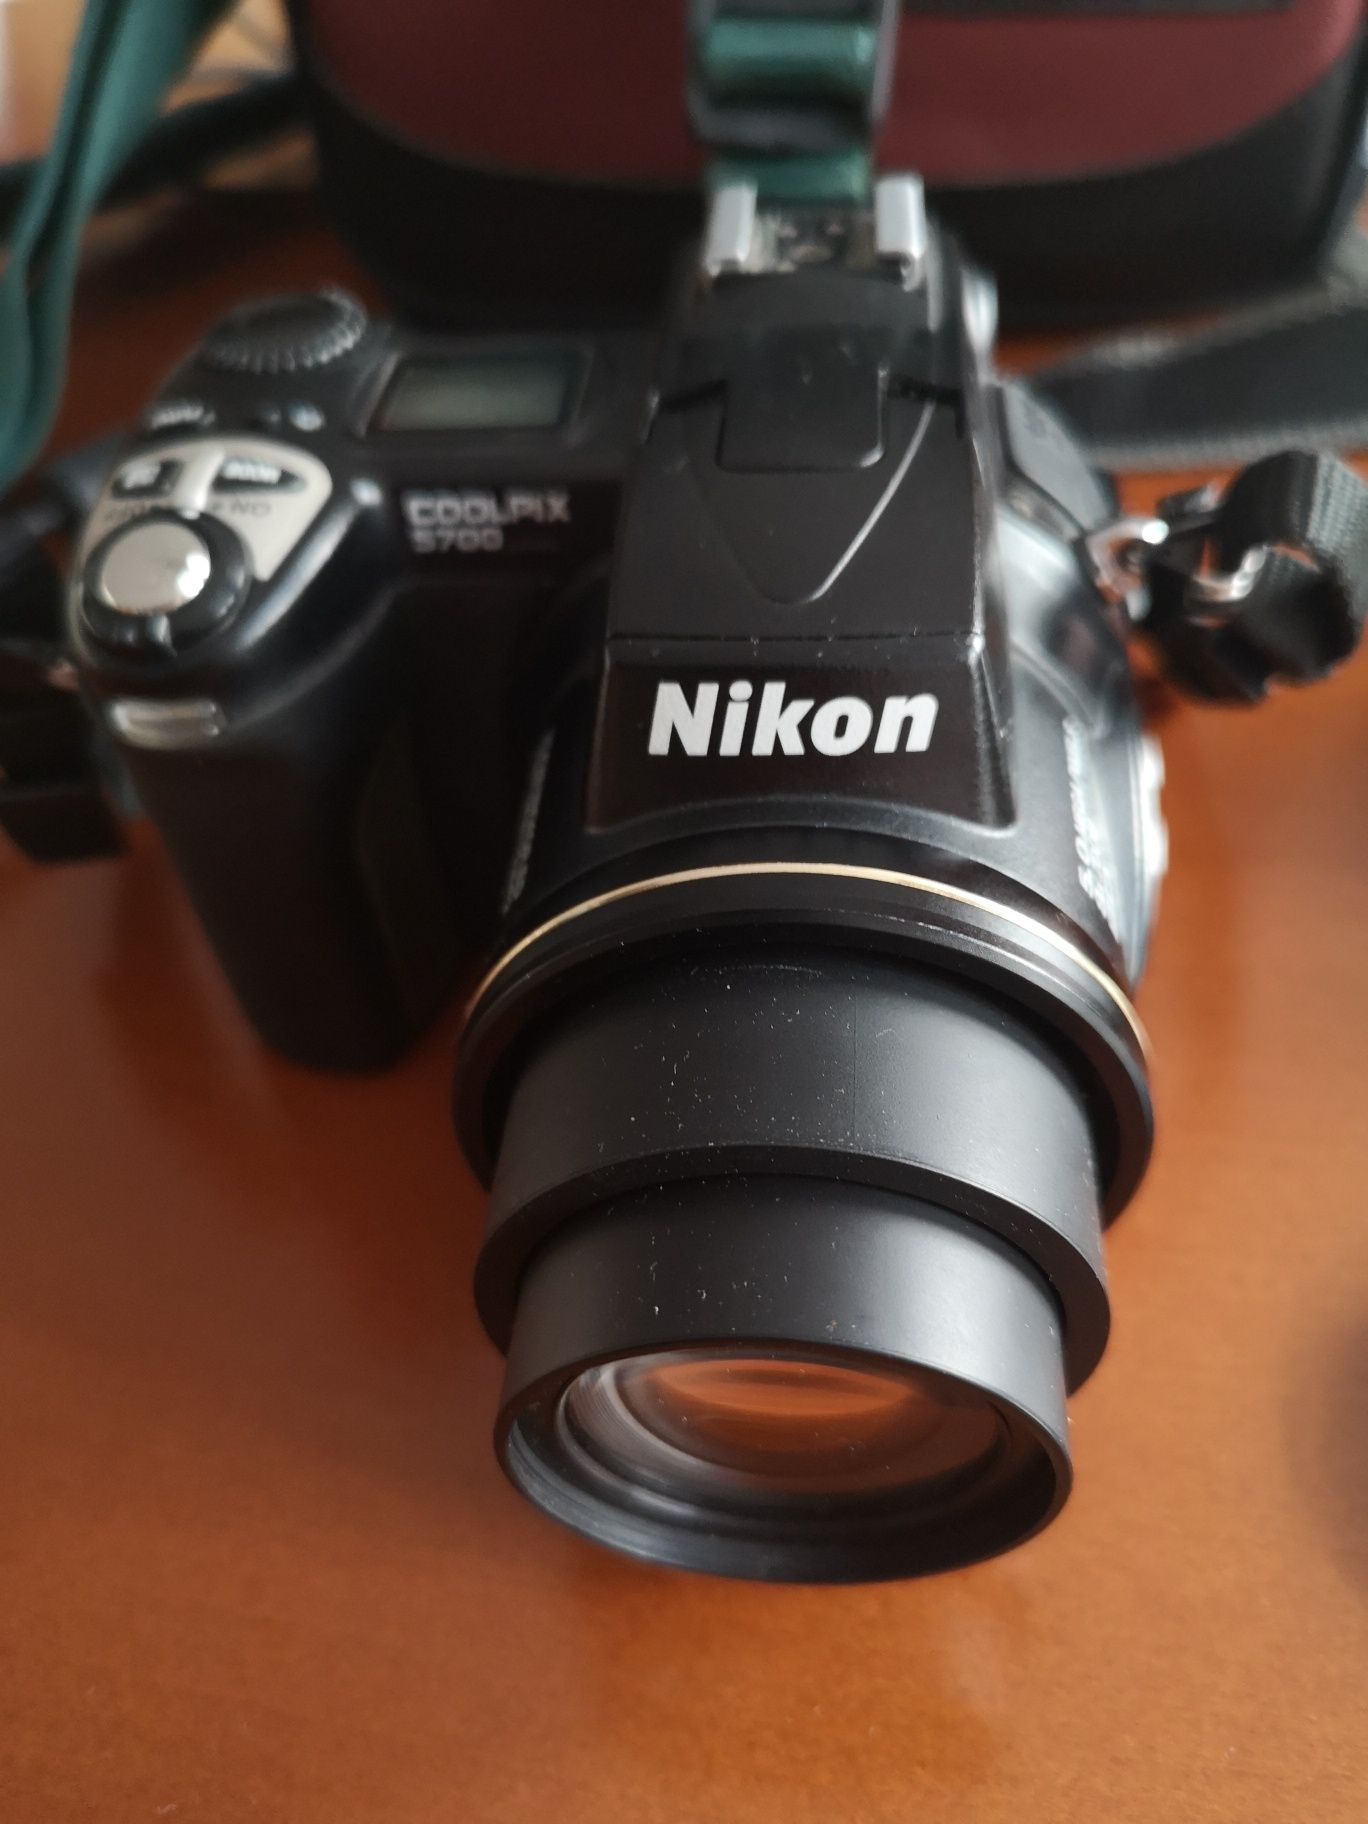 Nikon Coolpix 5700 sprawny.